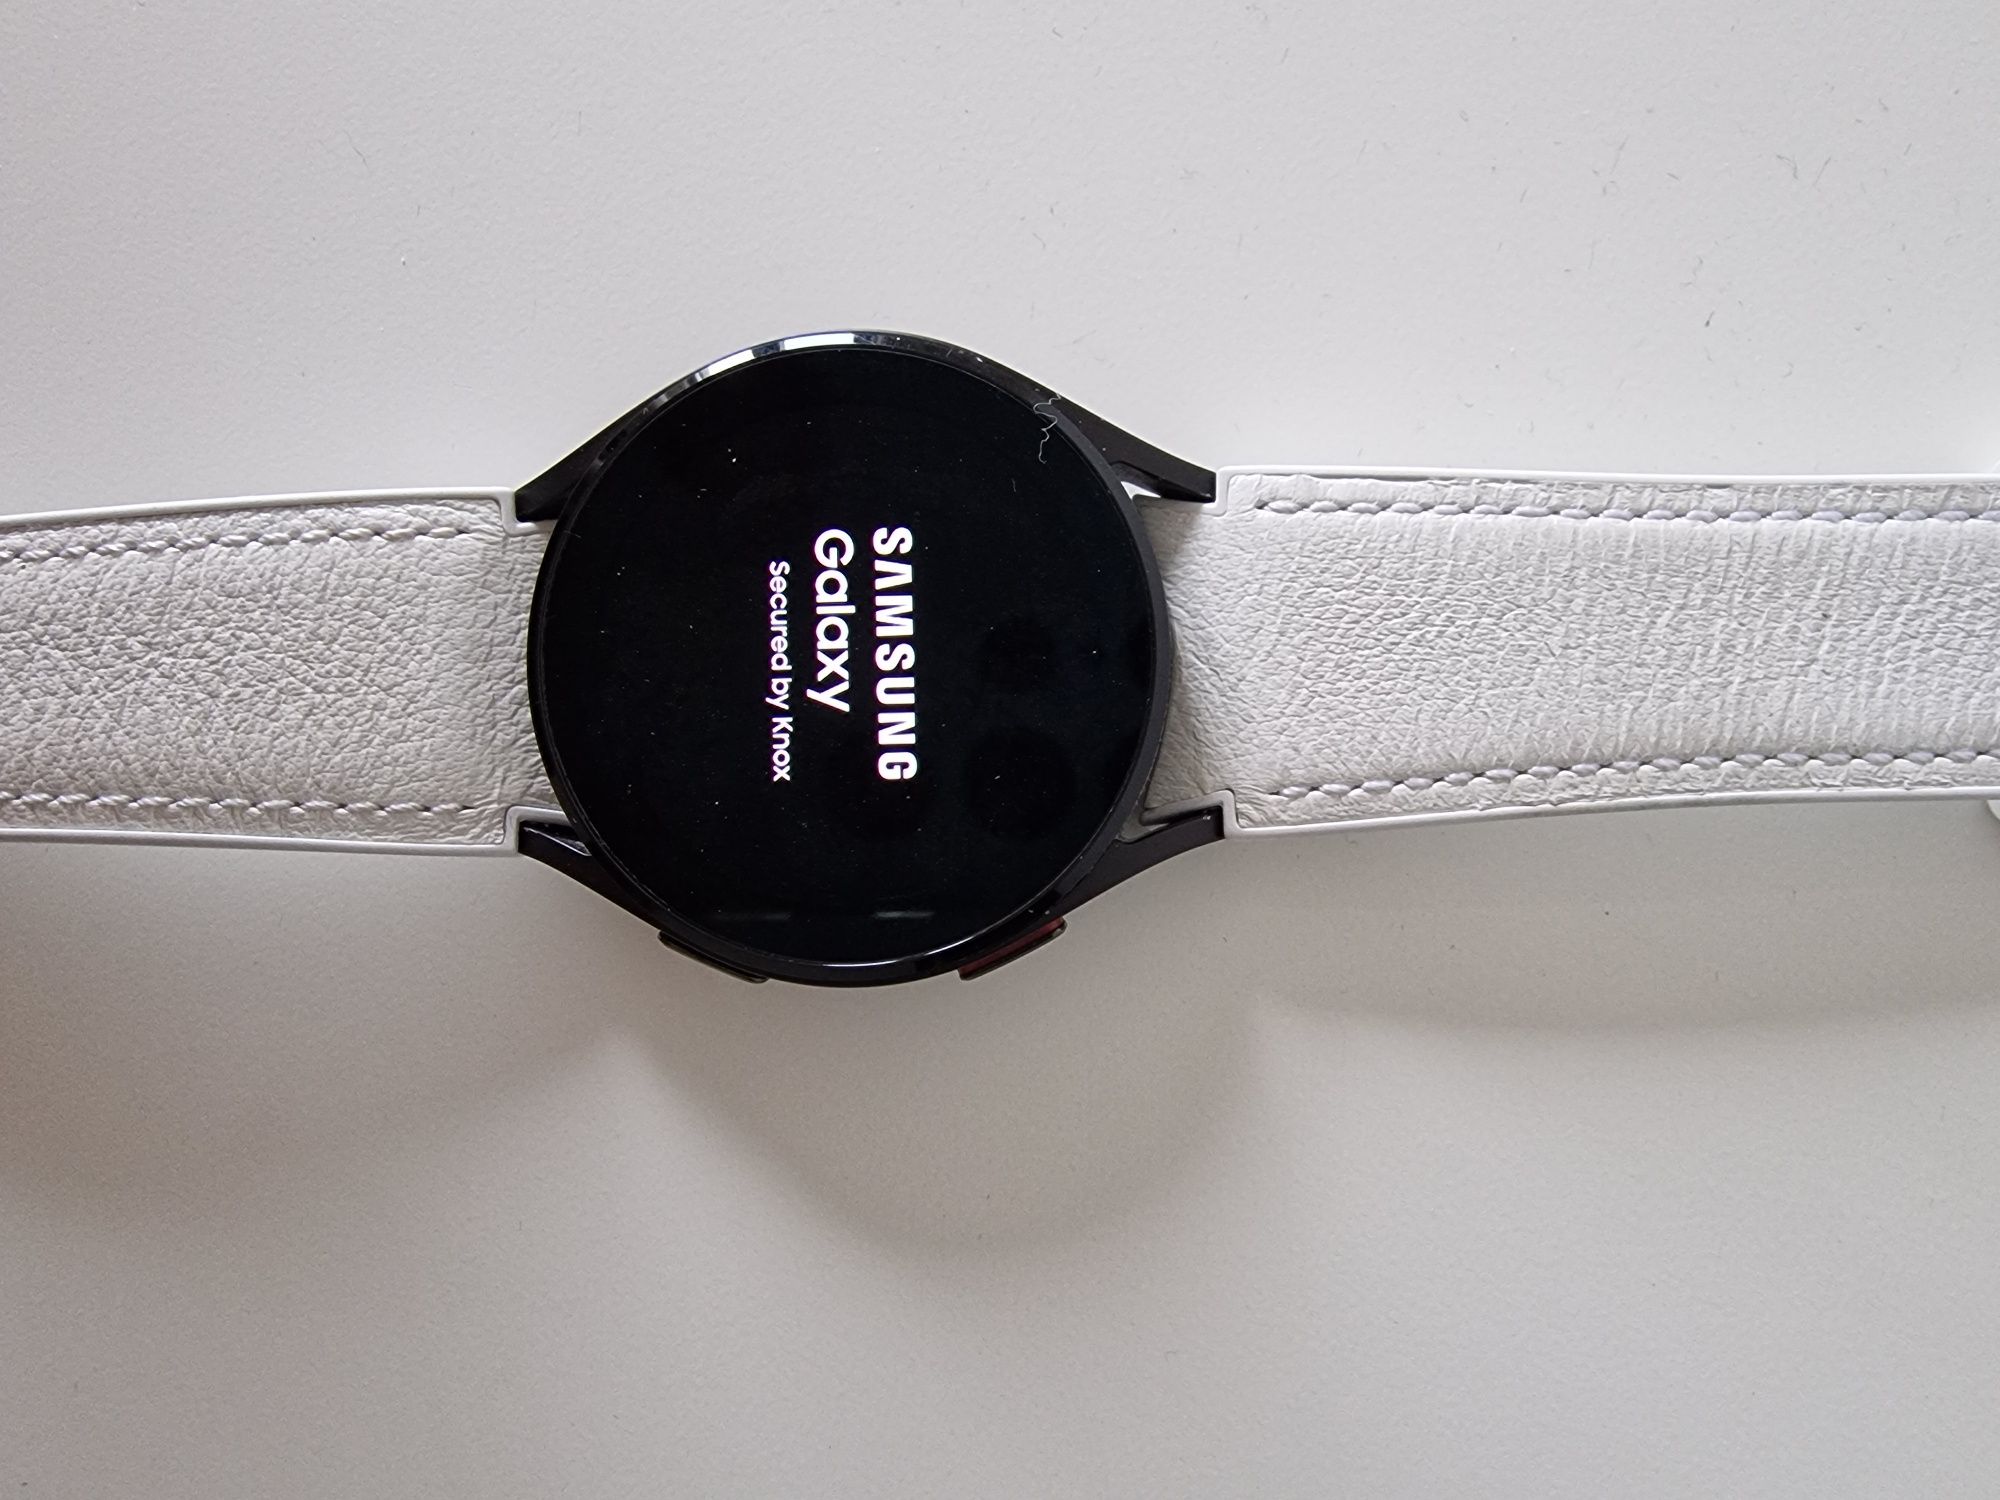 Samsung Galaxy Watch 4 como novo